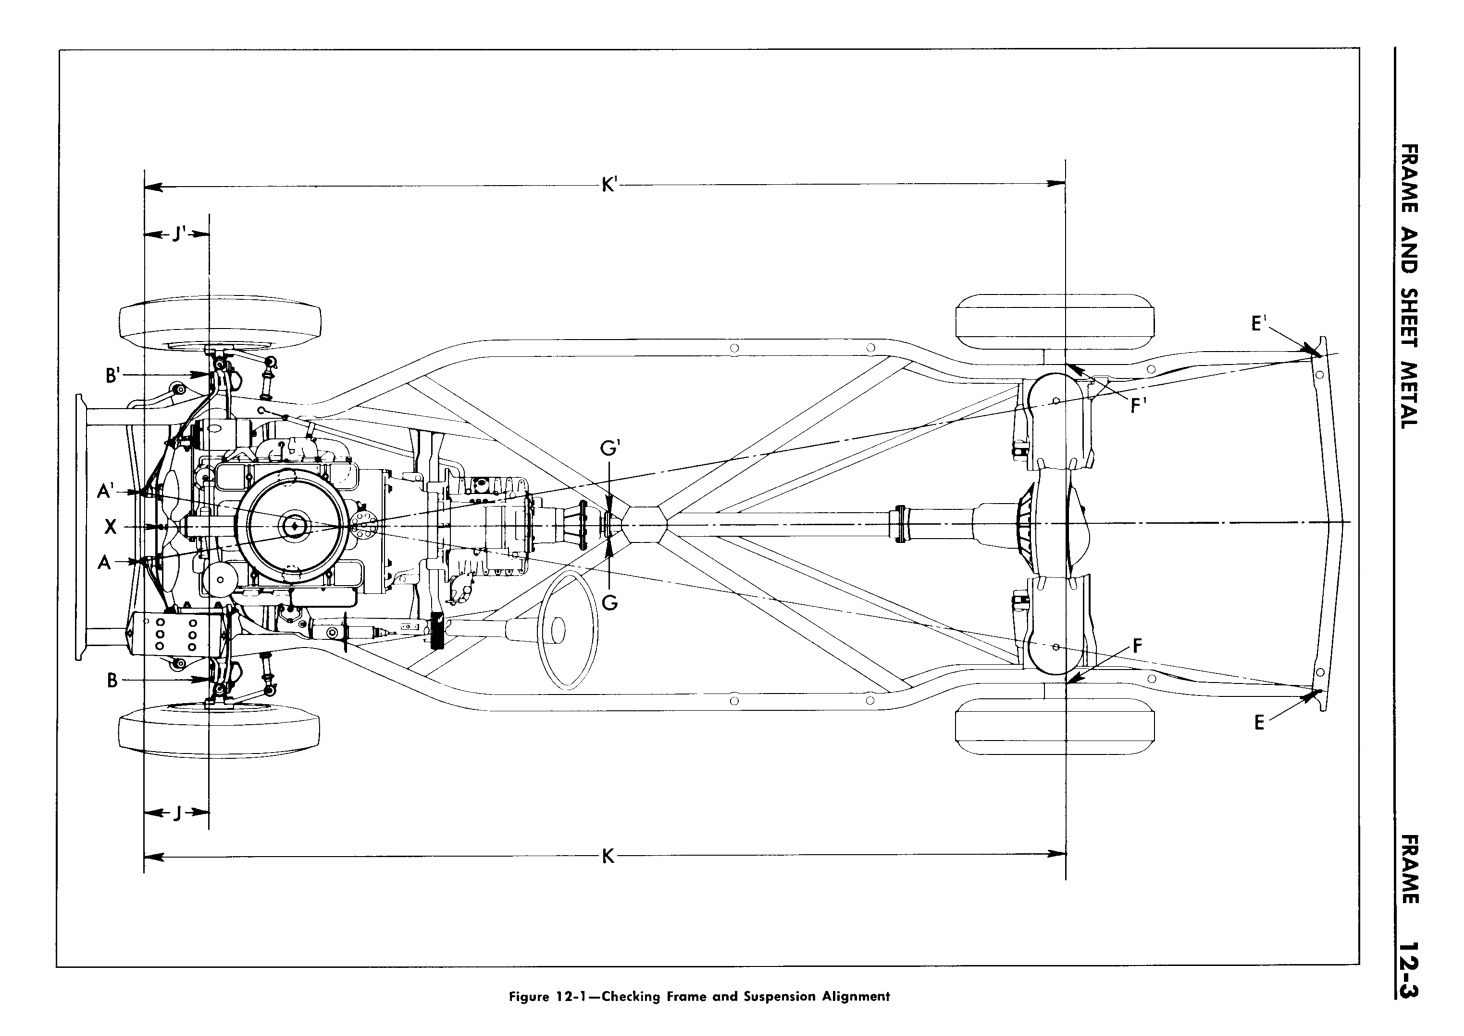 n_13 1957 Buick Shop Manual - Frame & Sheet Metal-003-003.jpg